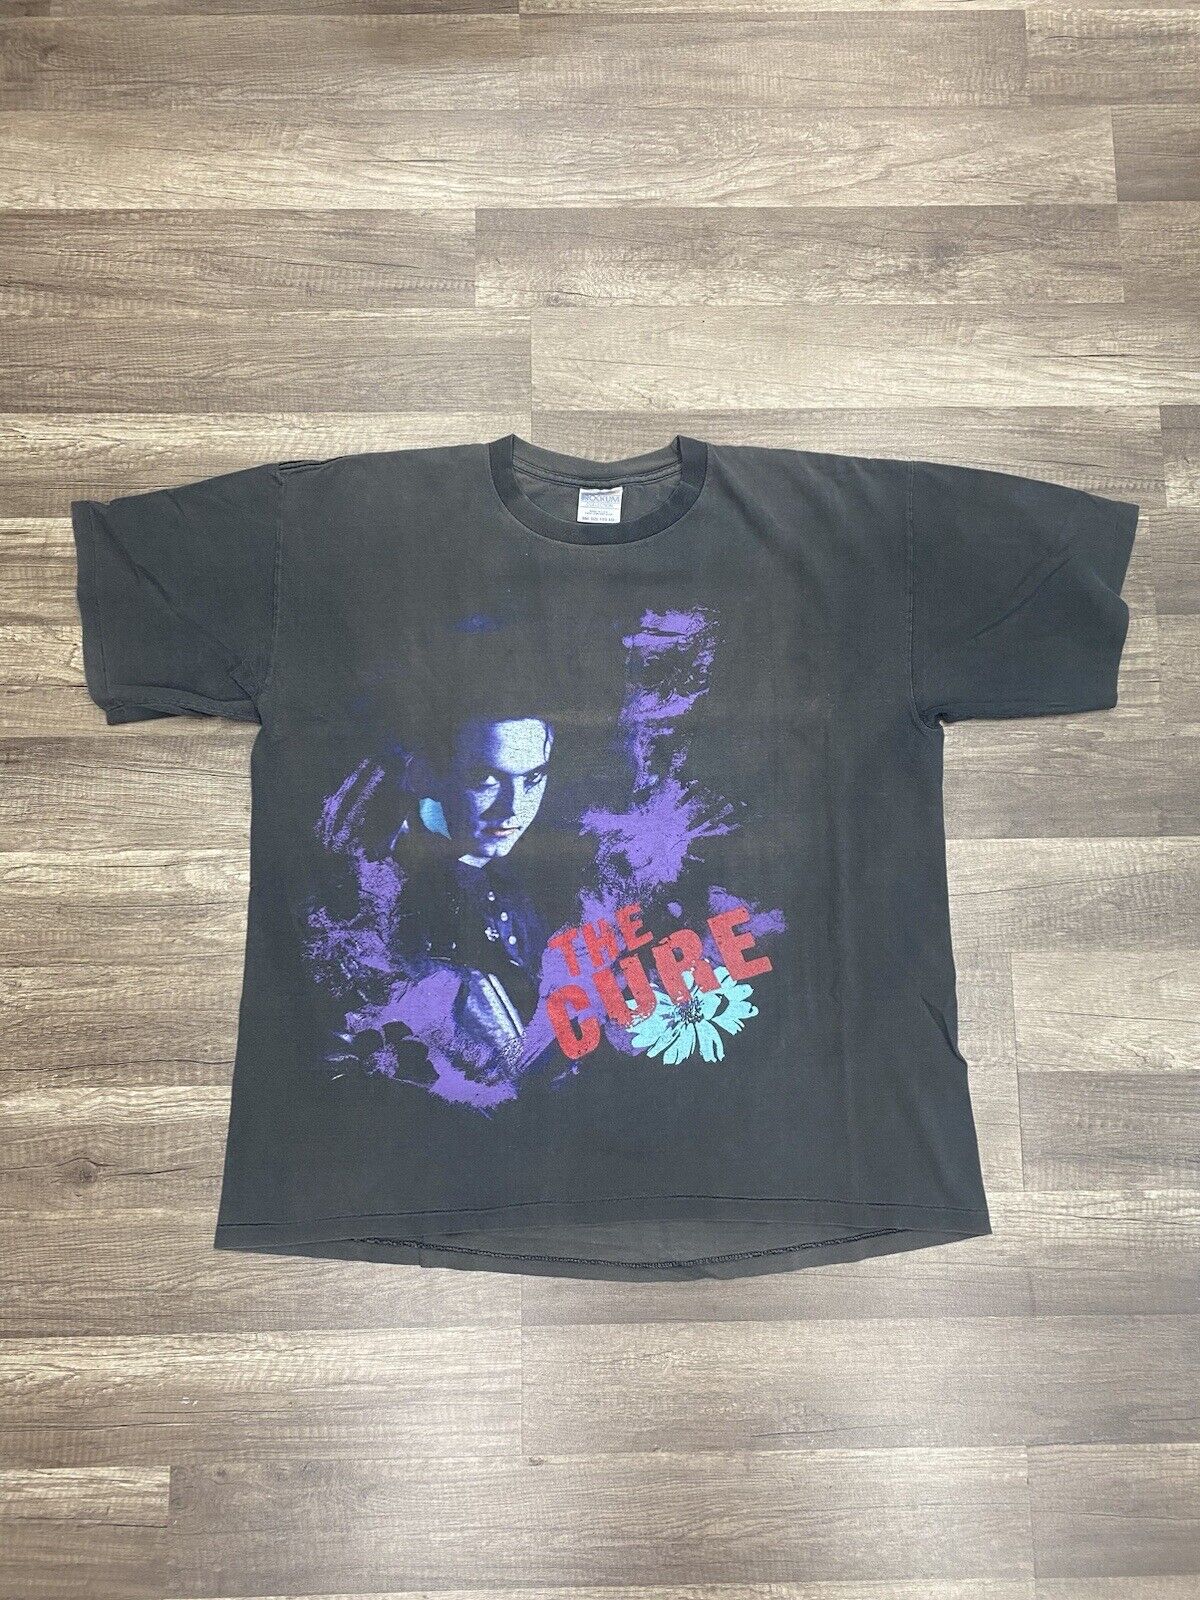 Vintage The Cure Prayer Tour 1989 Shirt AUTHENTIC